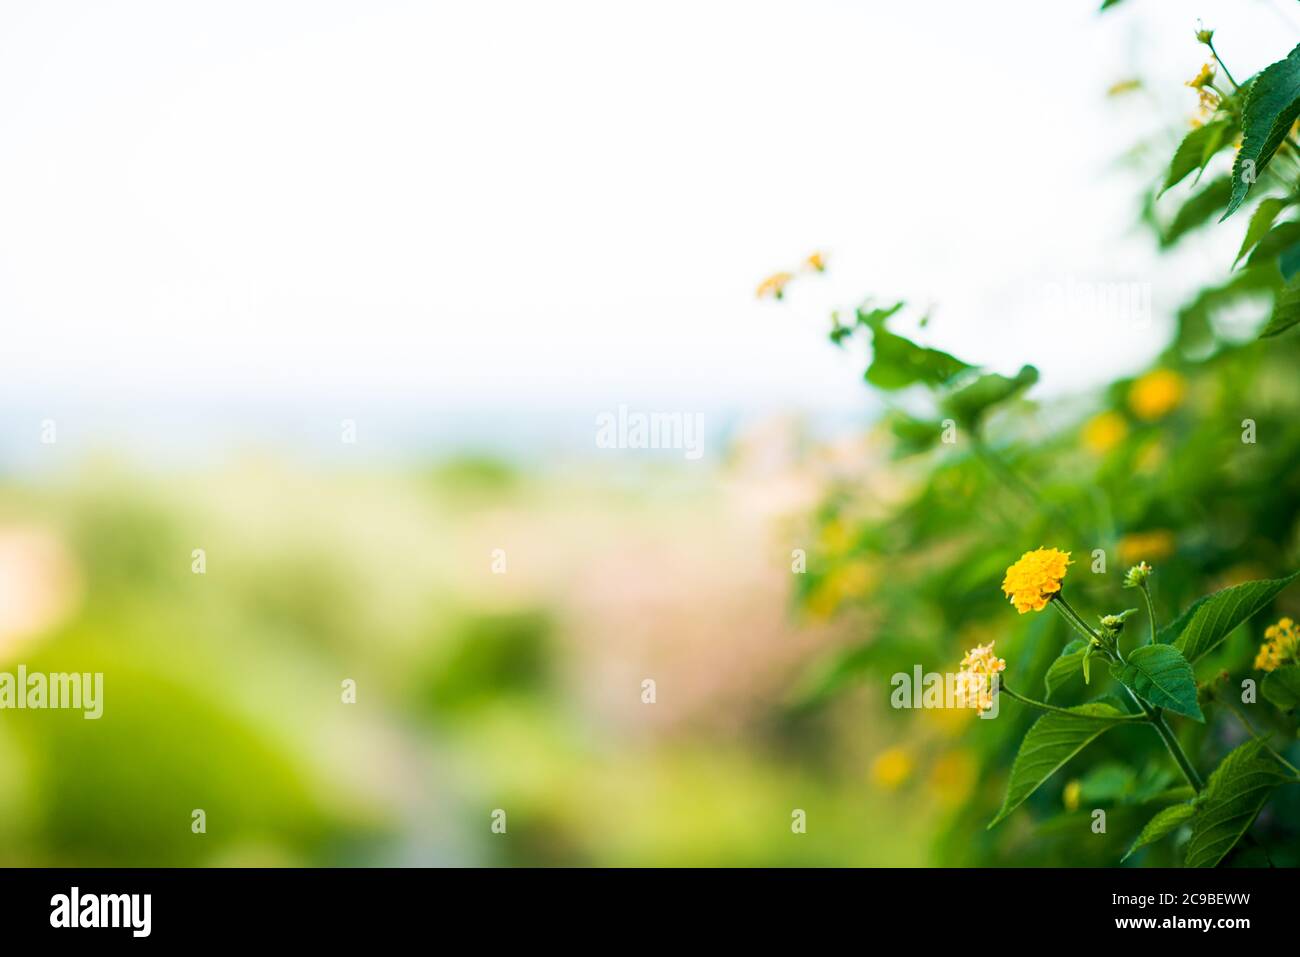 Floreciendo flores amarillas del Mediterráneo. Vista de primer plano. Fondo difuminado de color verde brillante. Foto de stock